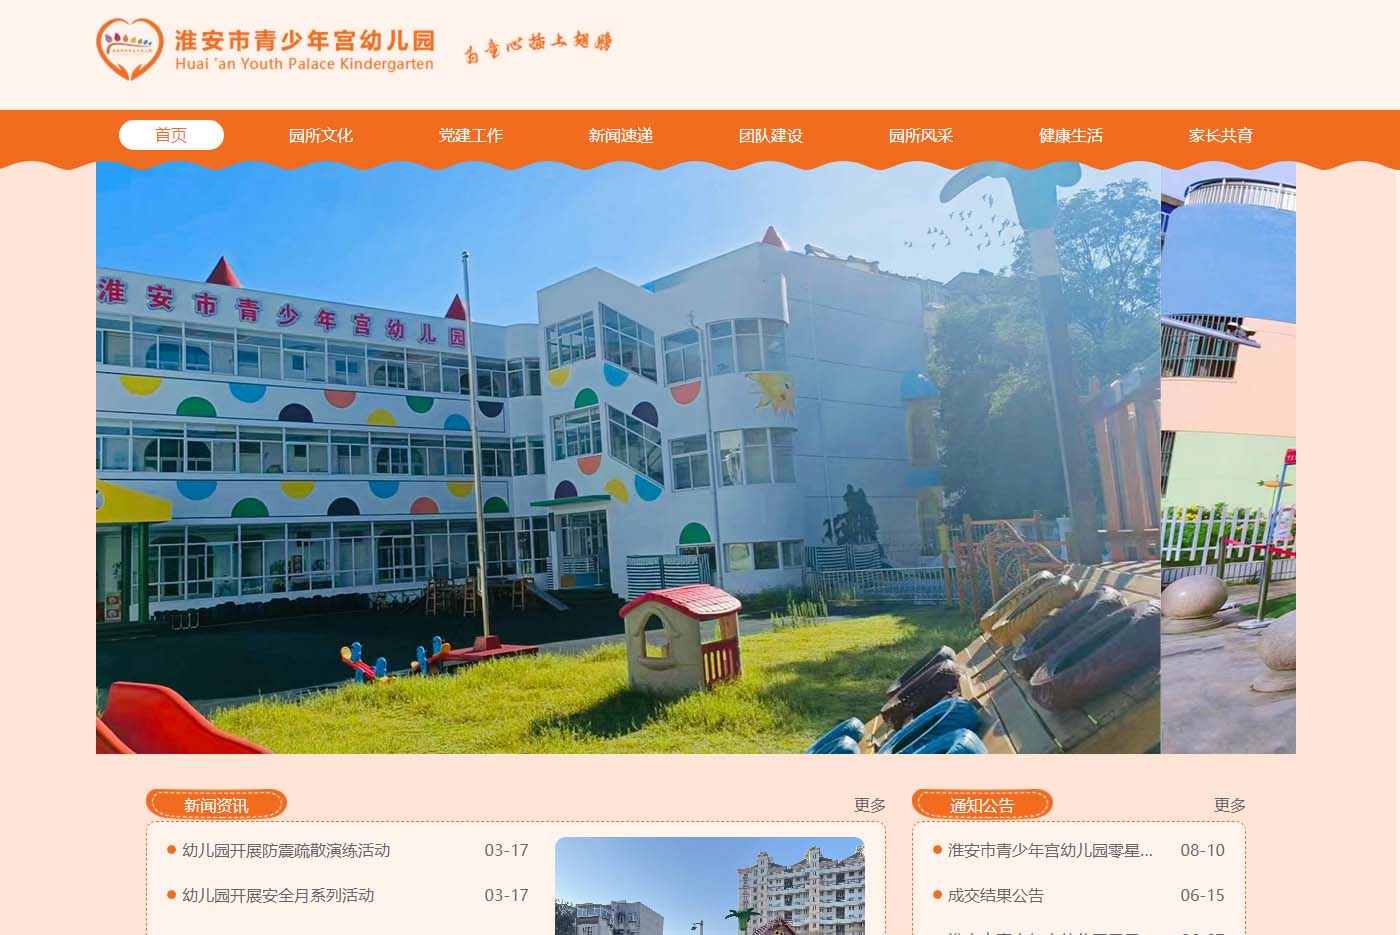 青少年宮幼兒園創辦于1989年，隸屬于共青團淮安市委，目前有總園、健康園和化工(gōng)園。